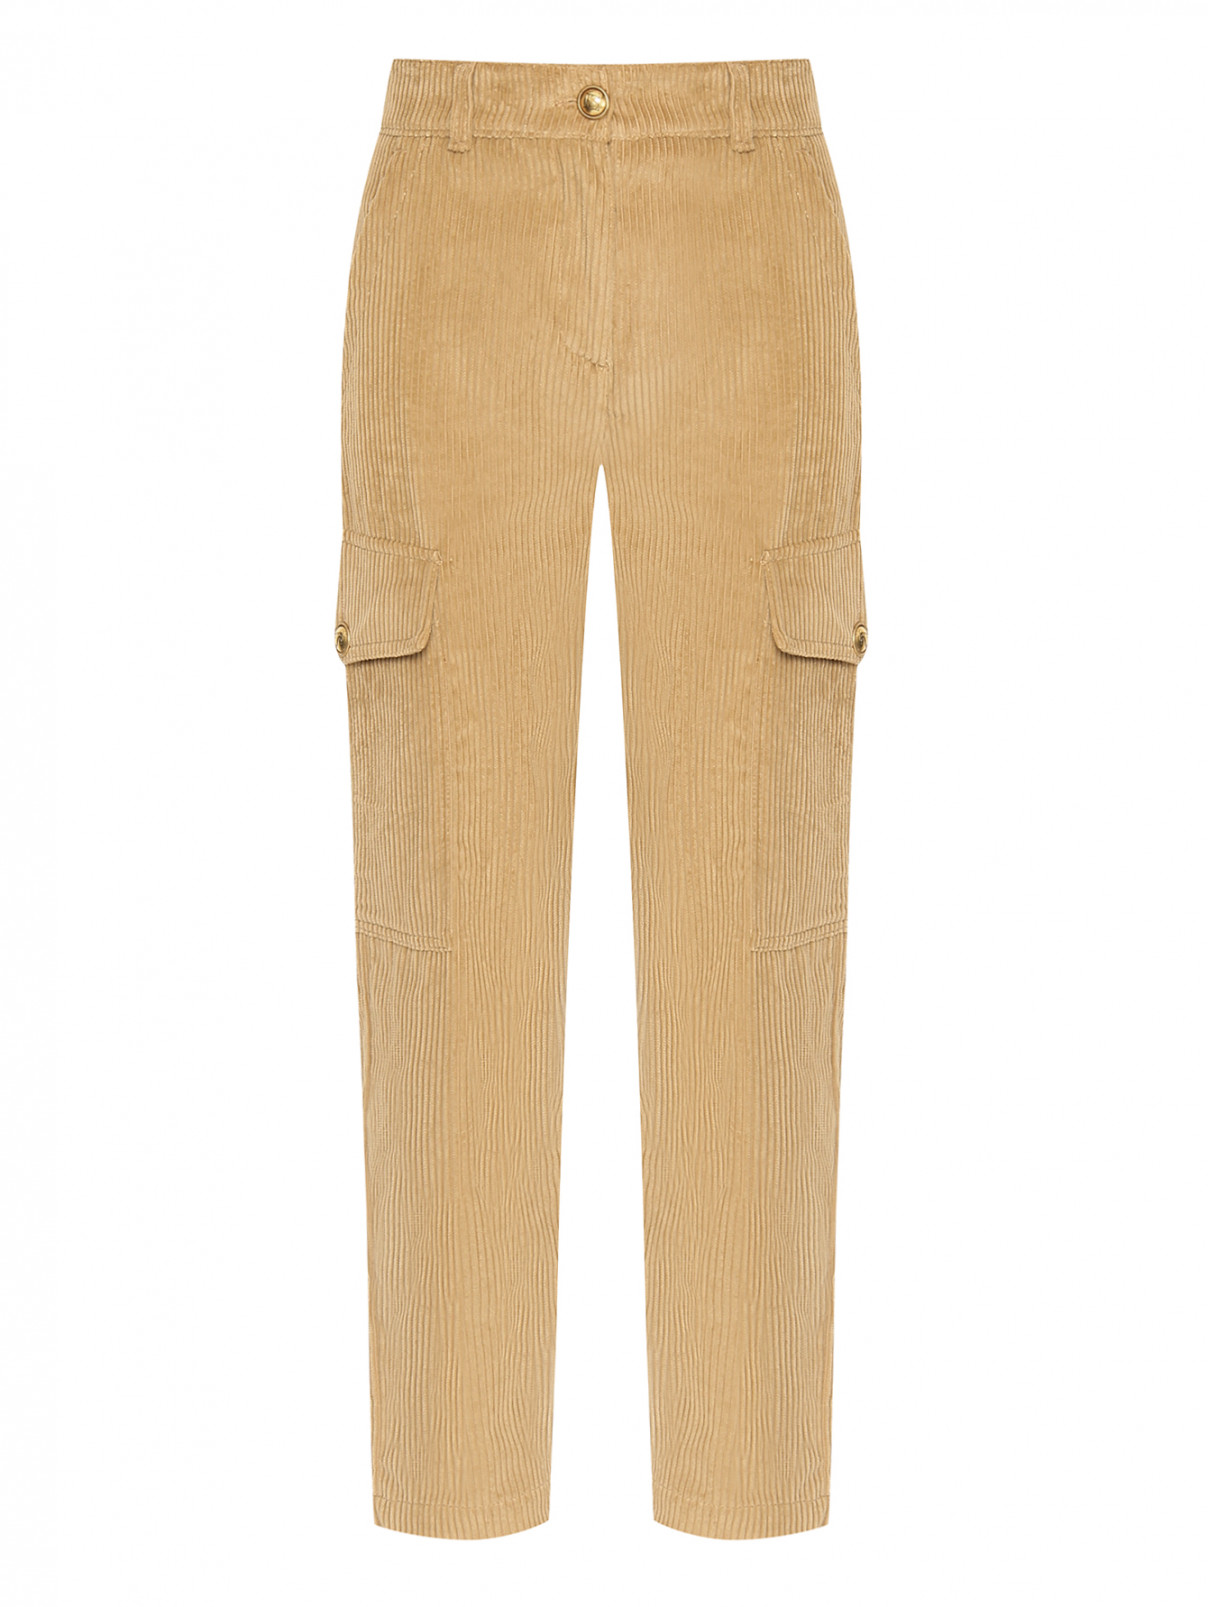 Вельветовые брюки с карманами Luisa Spagnoli  –  Общий вид  – Цвет:  Оранжевый